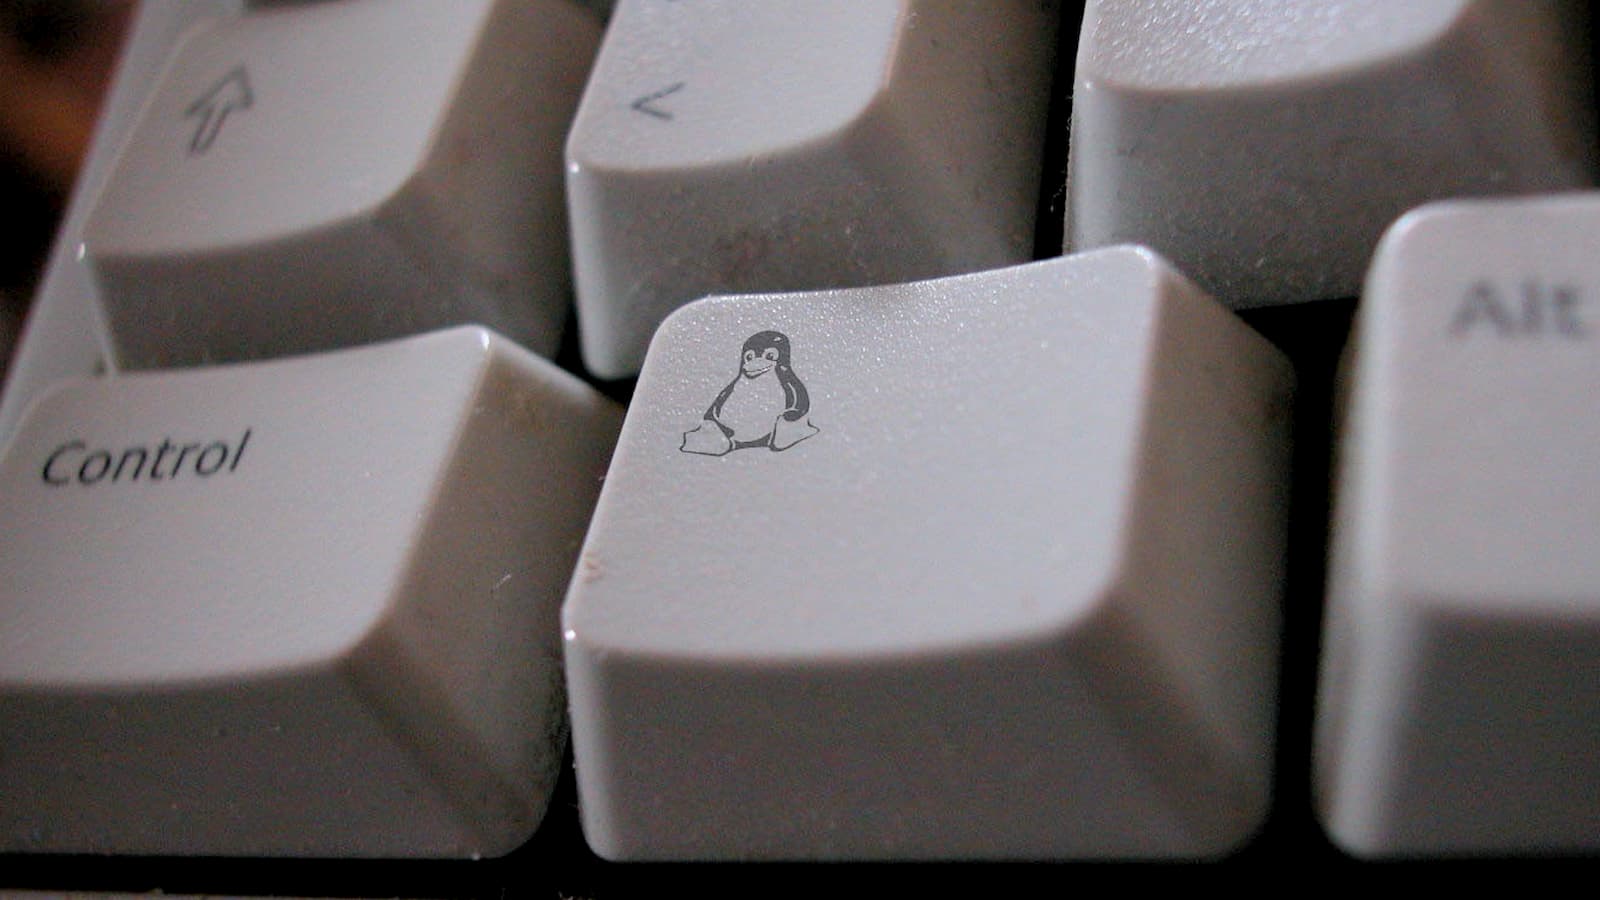 Tecla de teclado com o mascote do Linux, um penguim